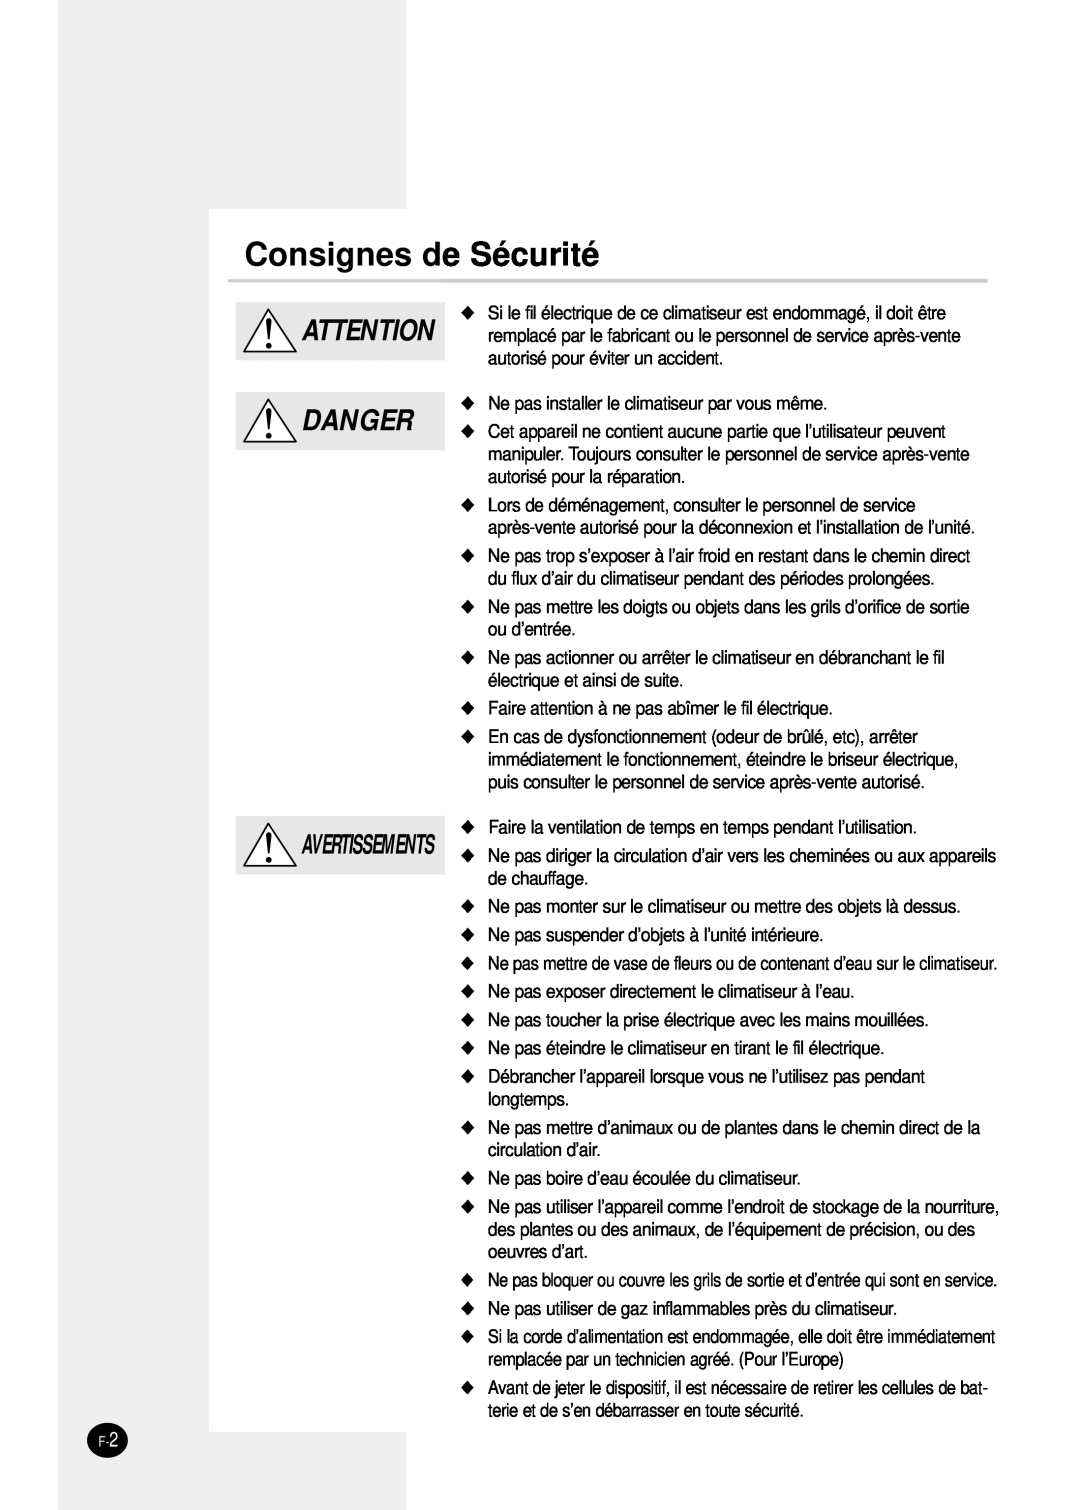 Samsung SH24TP6 manual Consignes de Sécurité, Danger, Avertissements 